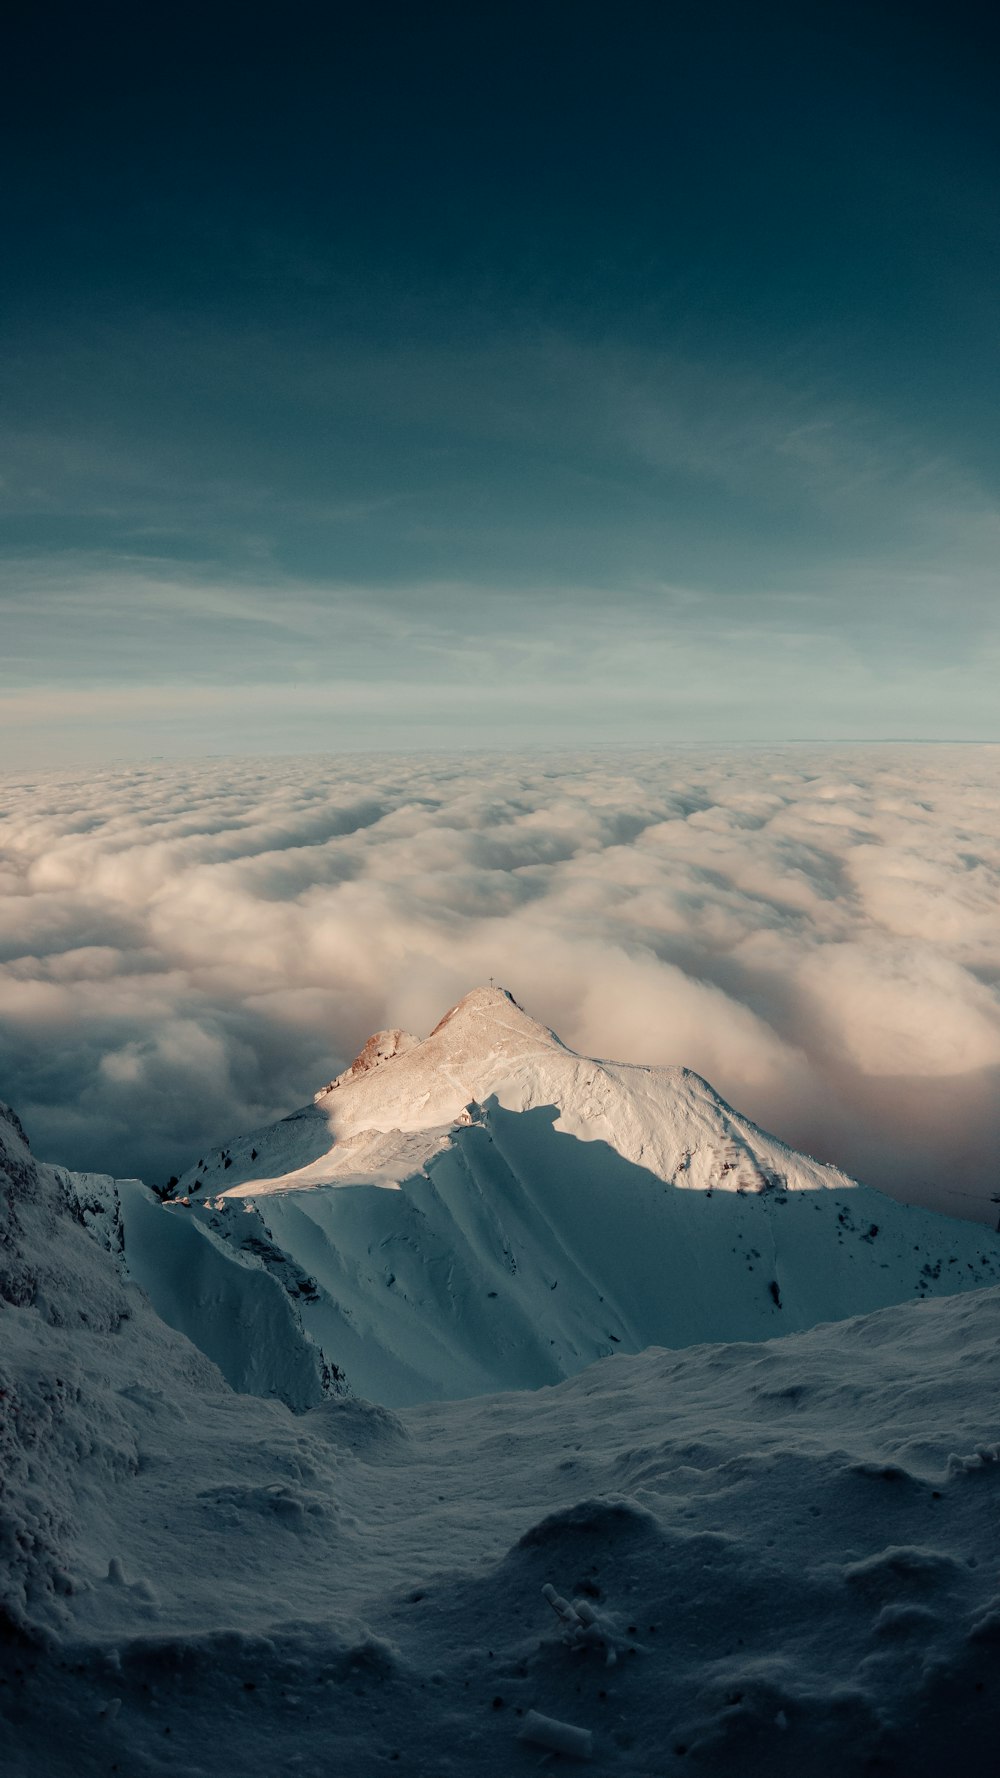 montagna coperta di neve sotto nuvole bianche durante il giorno